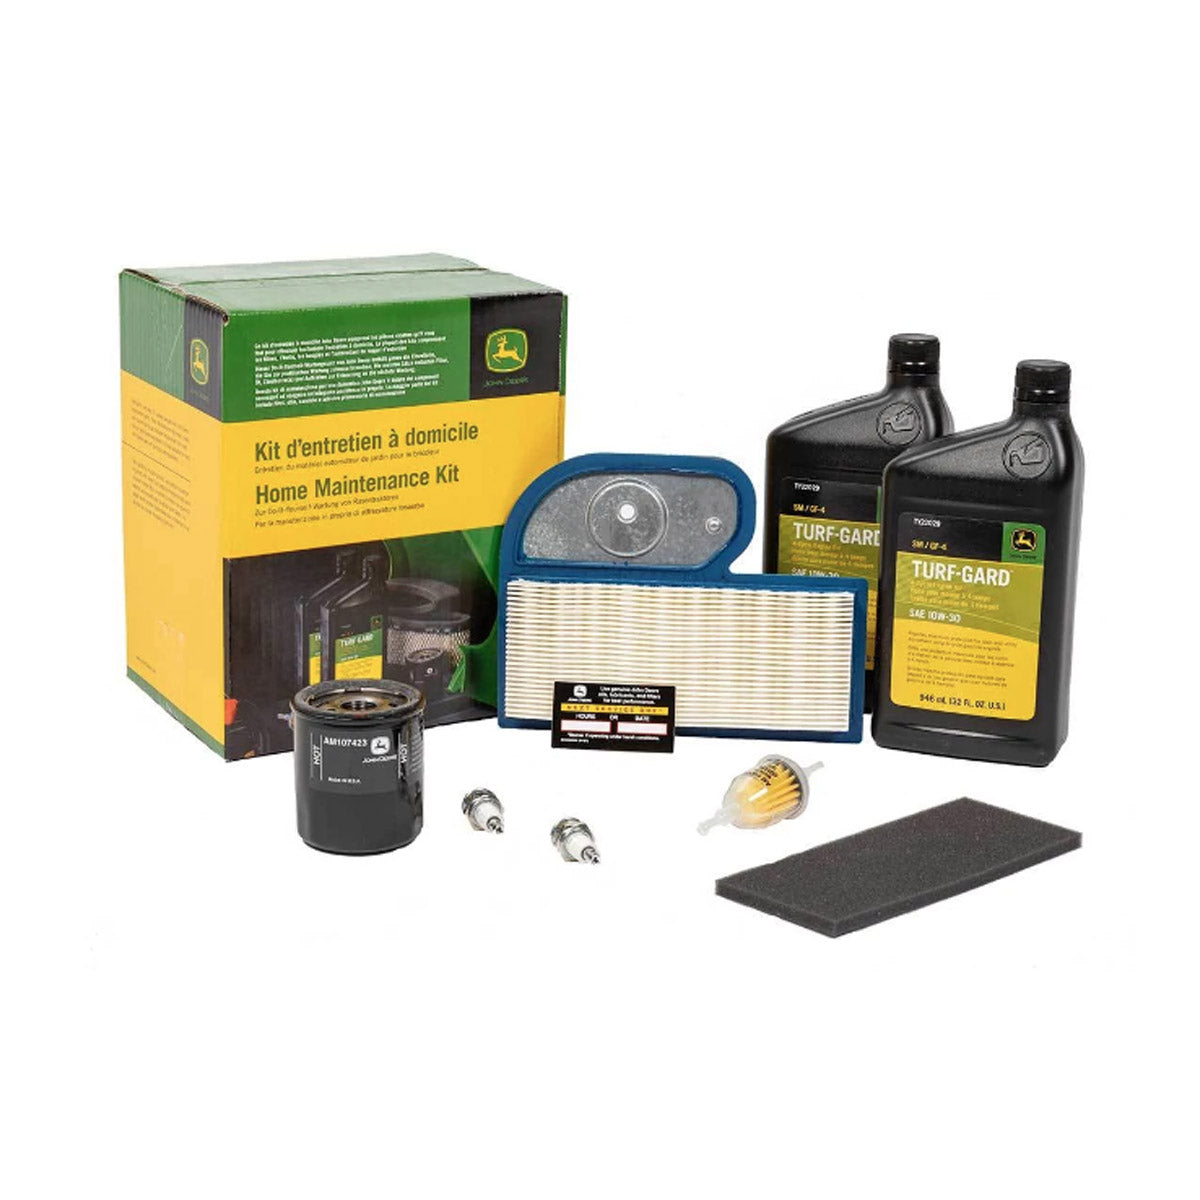 John Deere Home Maintenance Kit for LT, LX, GT, GX & 300 Series - LG195